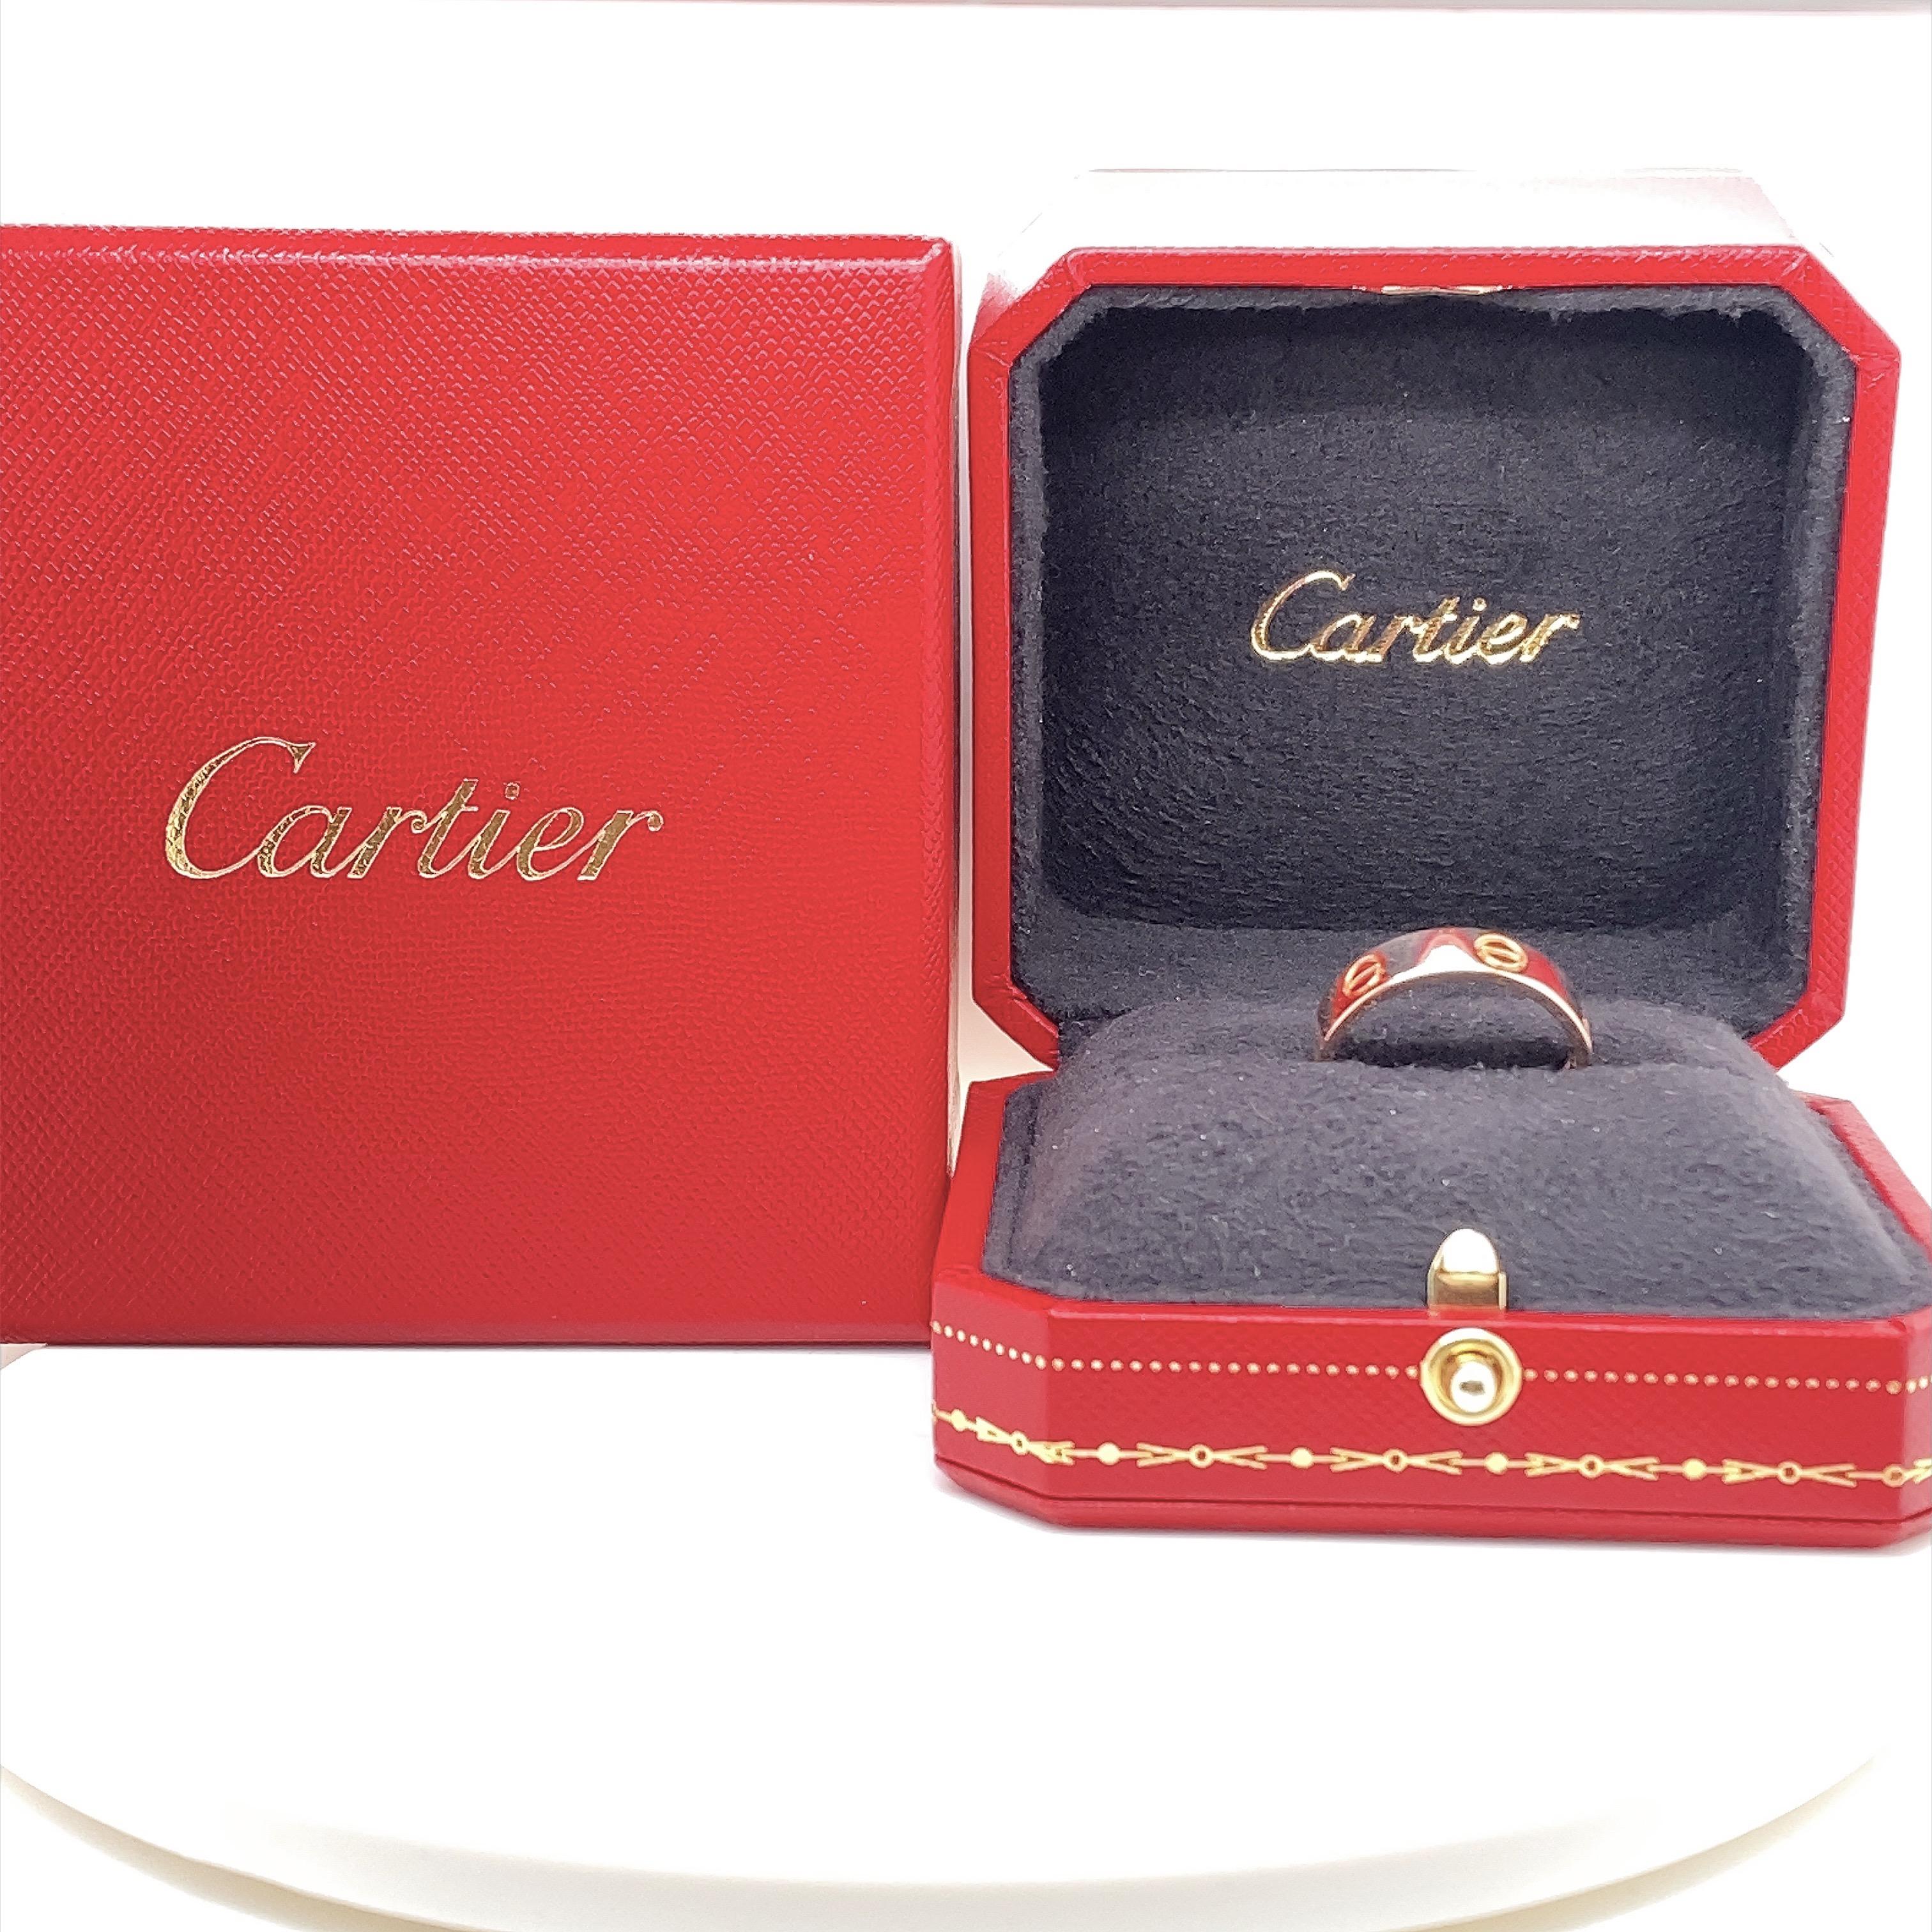 Cartier LOVE Band Ring
Stil:  CRB4084800
Referenznummer:  EHR***
Metall:   18kt Rose Gold
Größe:  Cartier 58 / US 8 1/2
Abmessungen:  5.5 MM
Wahrzeichen:  ©Cartier 58 EHR*** Au 750 g.g.A
Enthält:  Cartier Ring Box - Original Quittung
Einzelhandel: 